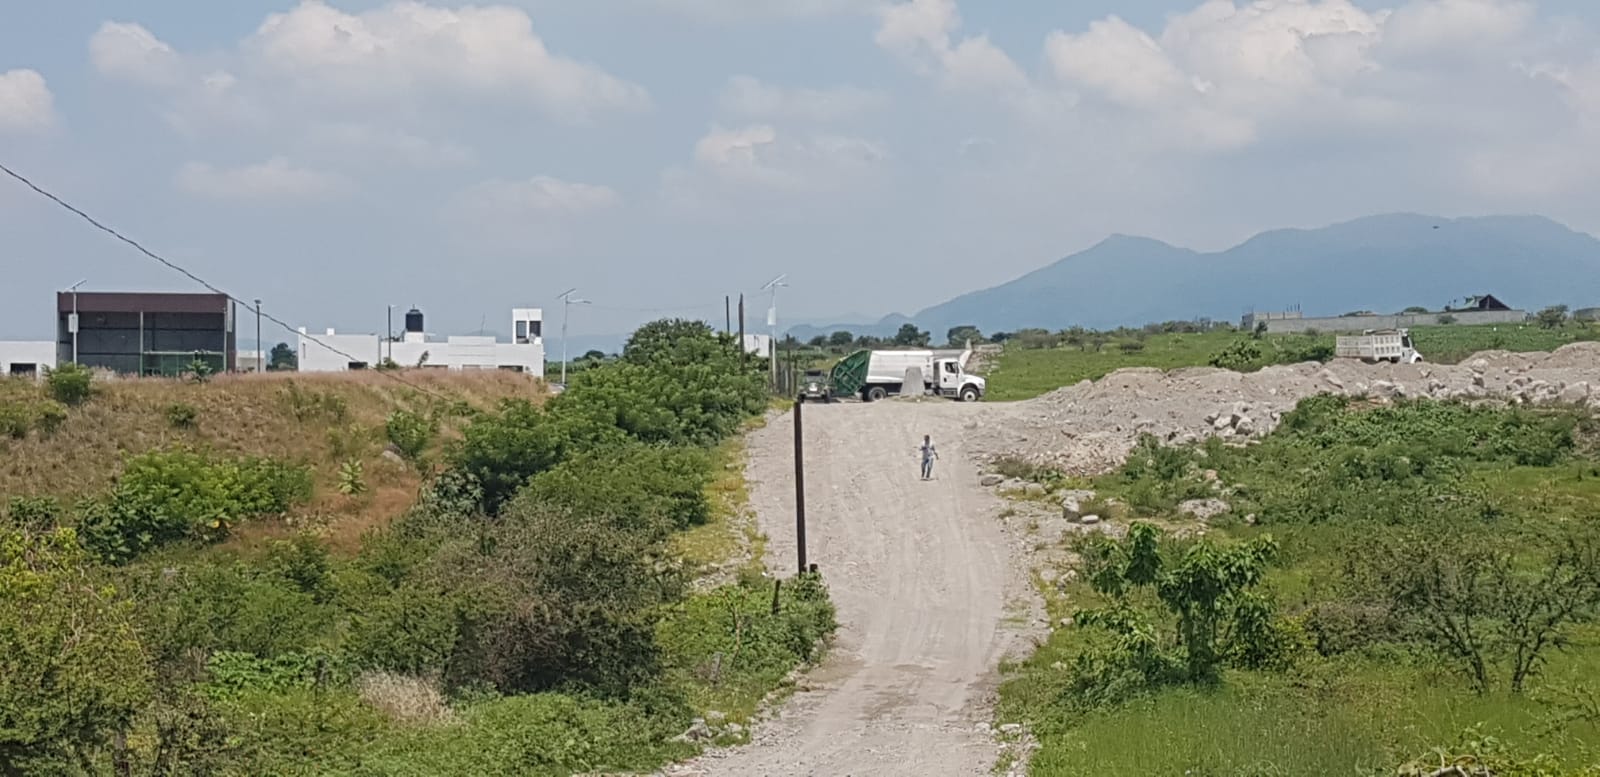 Tras 12 años sin operar, reactivan relleno sanitario en Morelos; ambientalistas exigen clausurarlo